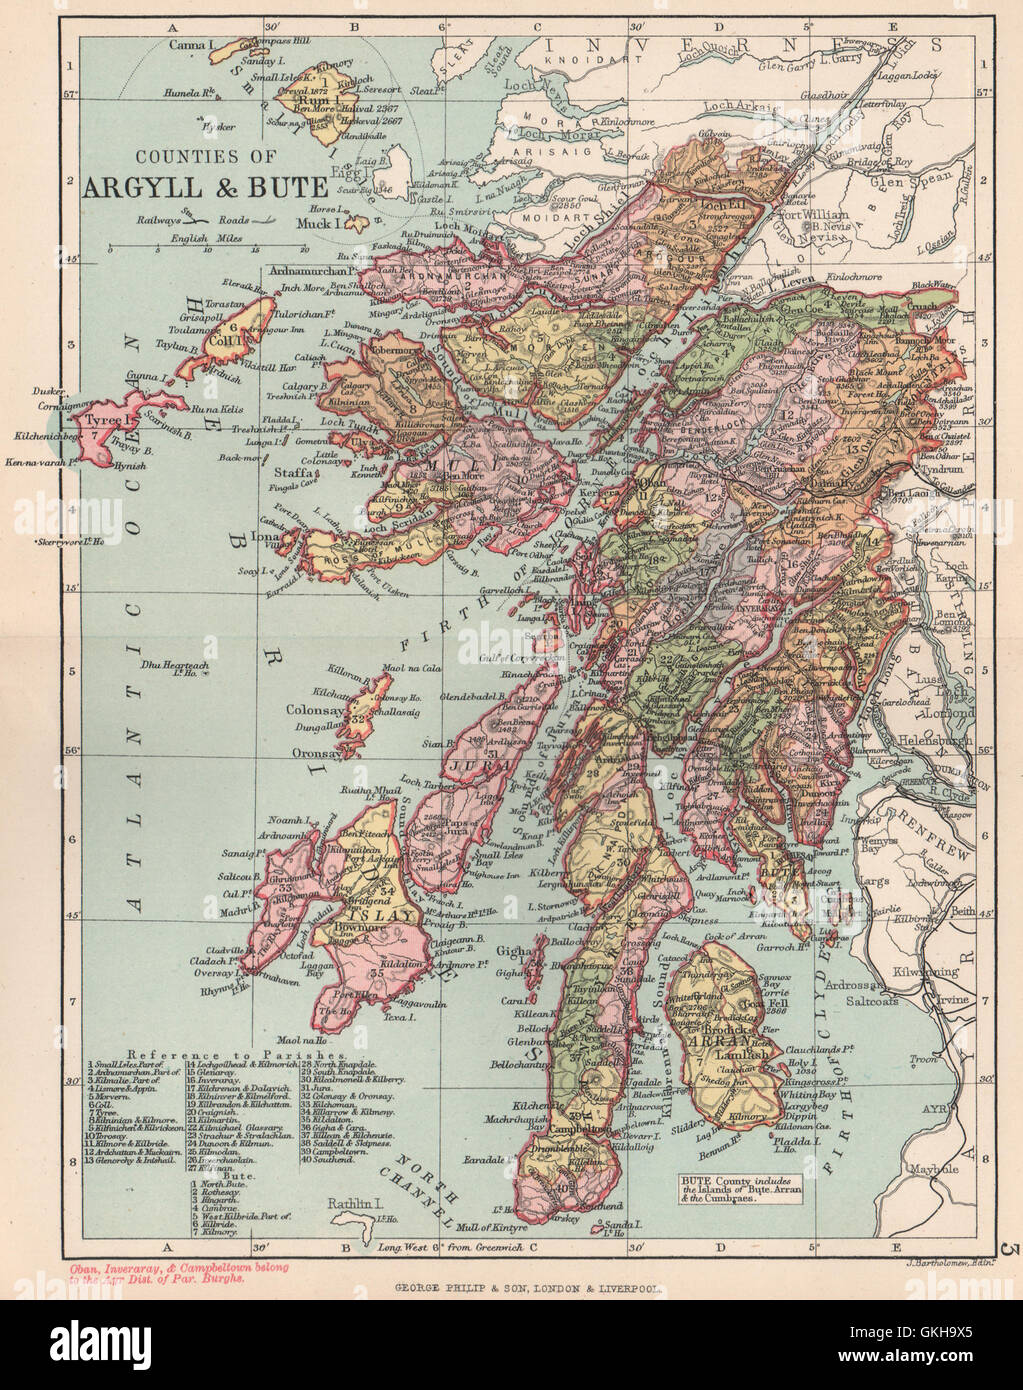 Counties Of Argyll Bute Argyllshire Buteshire Bartholomew 1891 Map GKH9X5 